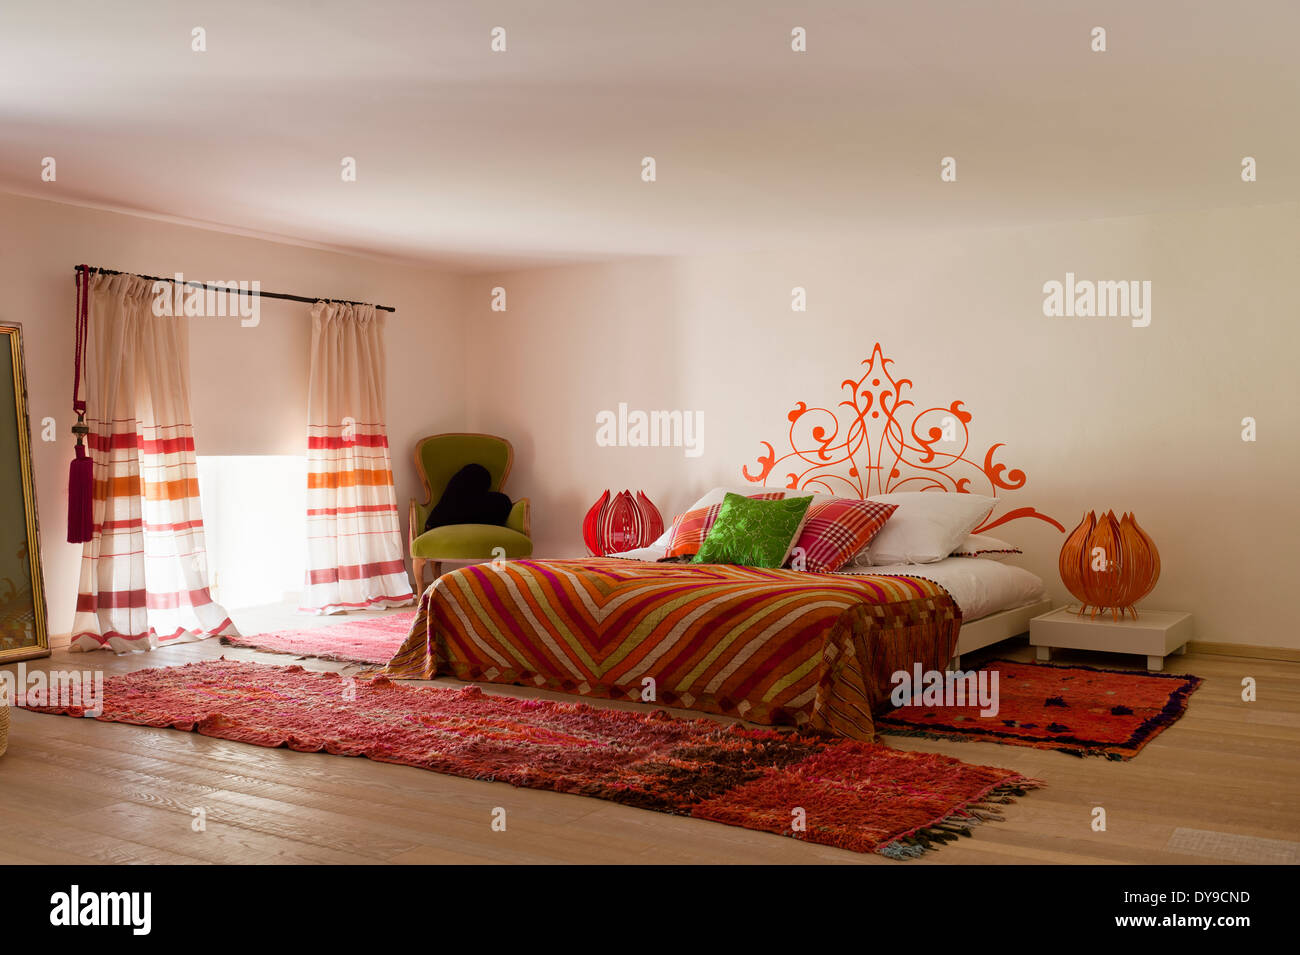 Indios y cálida inspiración marroquí dormitorio con telas de colores brillantes y suelos de roble lima Foto de stock